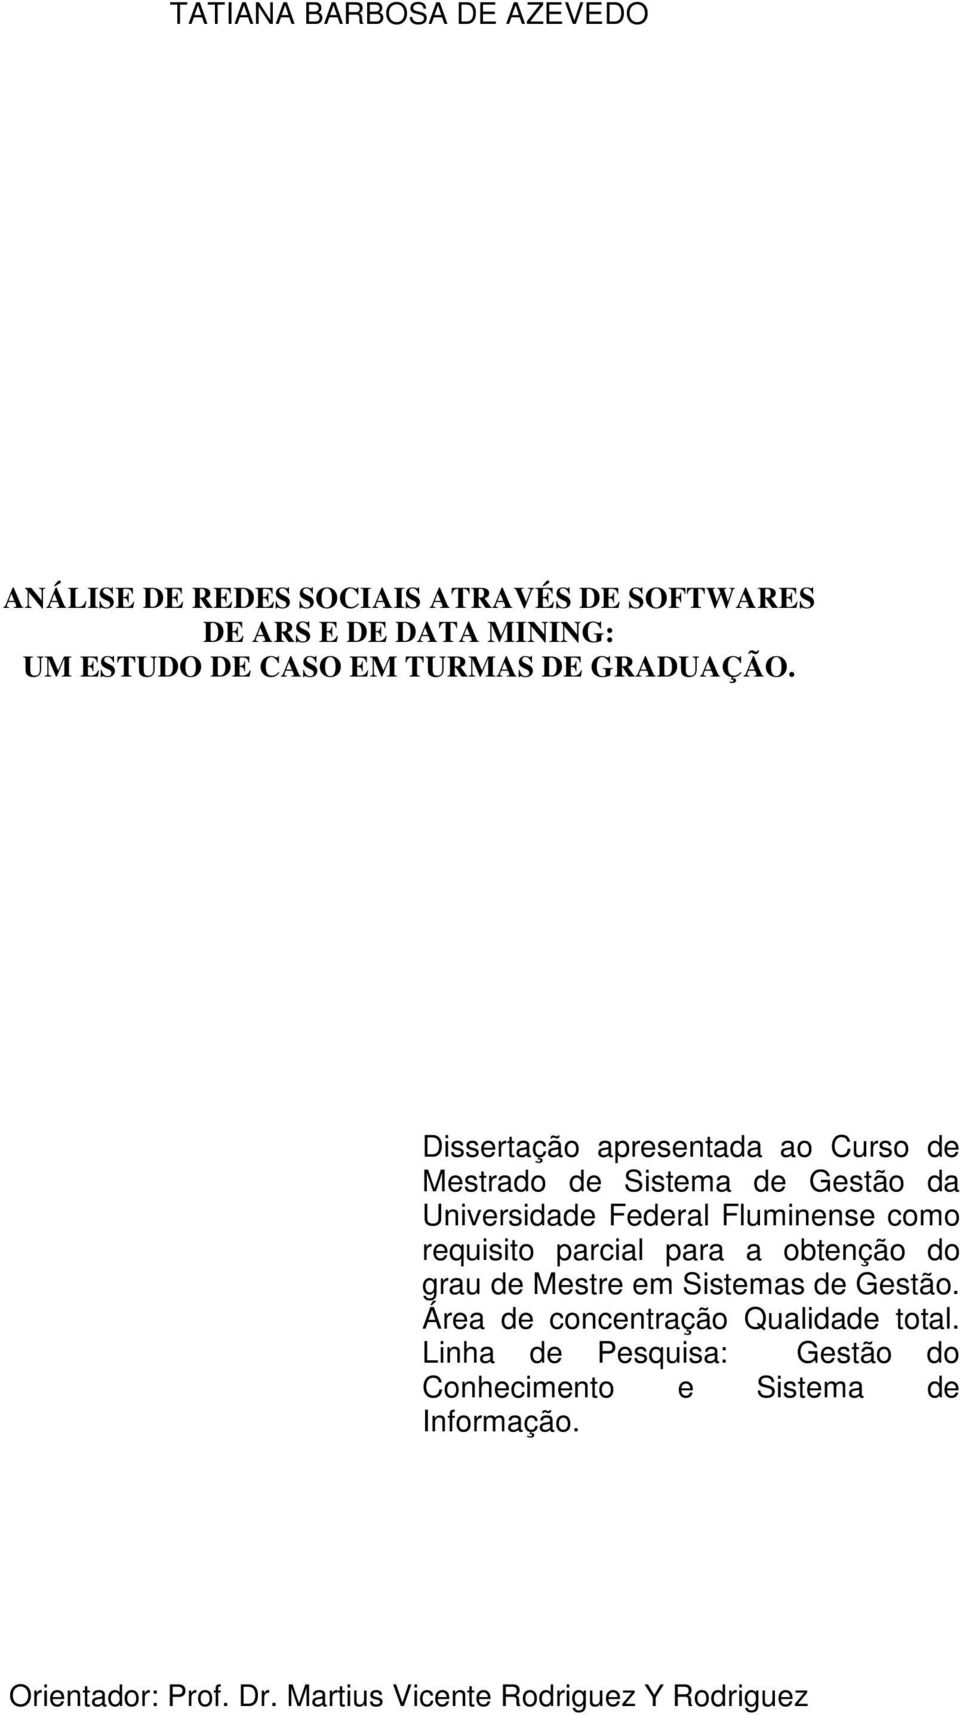 Dissertação apresentada ao Curso de Mestrado de Sistema de Gestão da Universidade Federal Fluminense como requisito